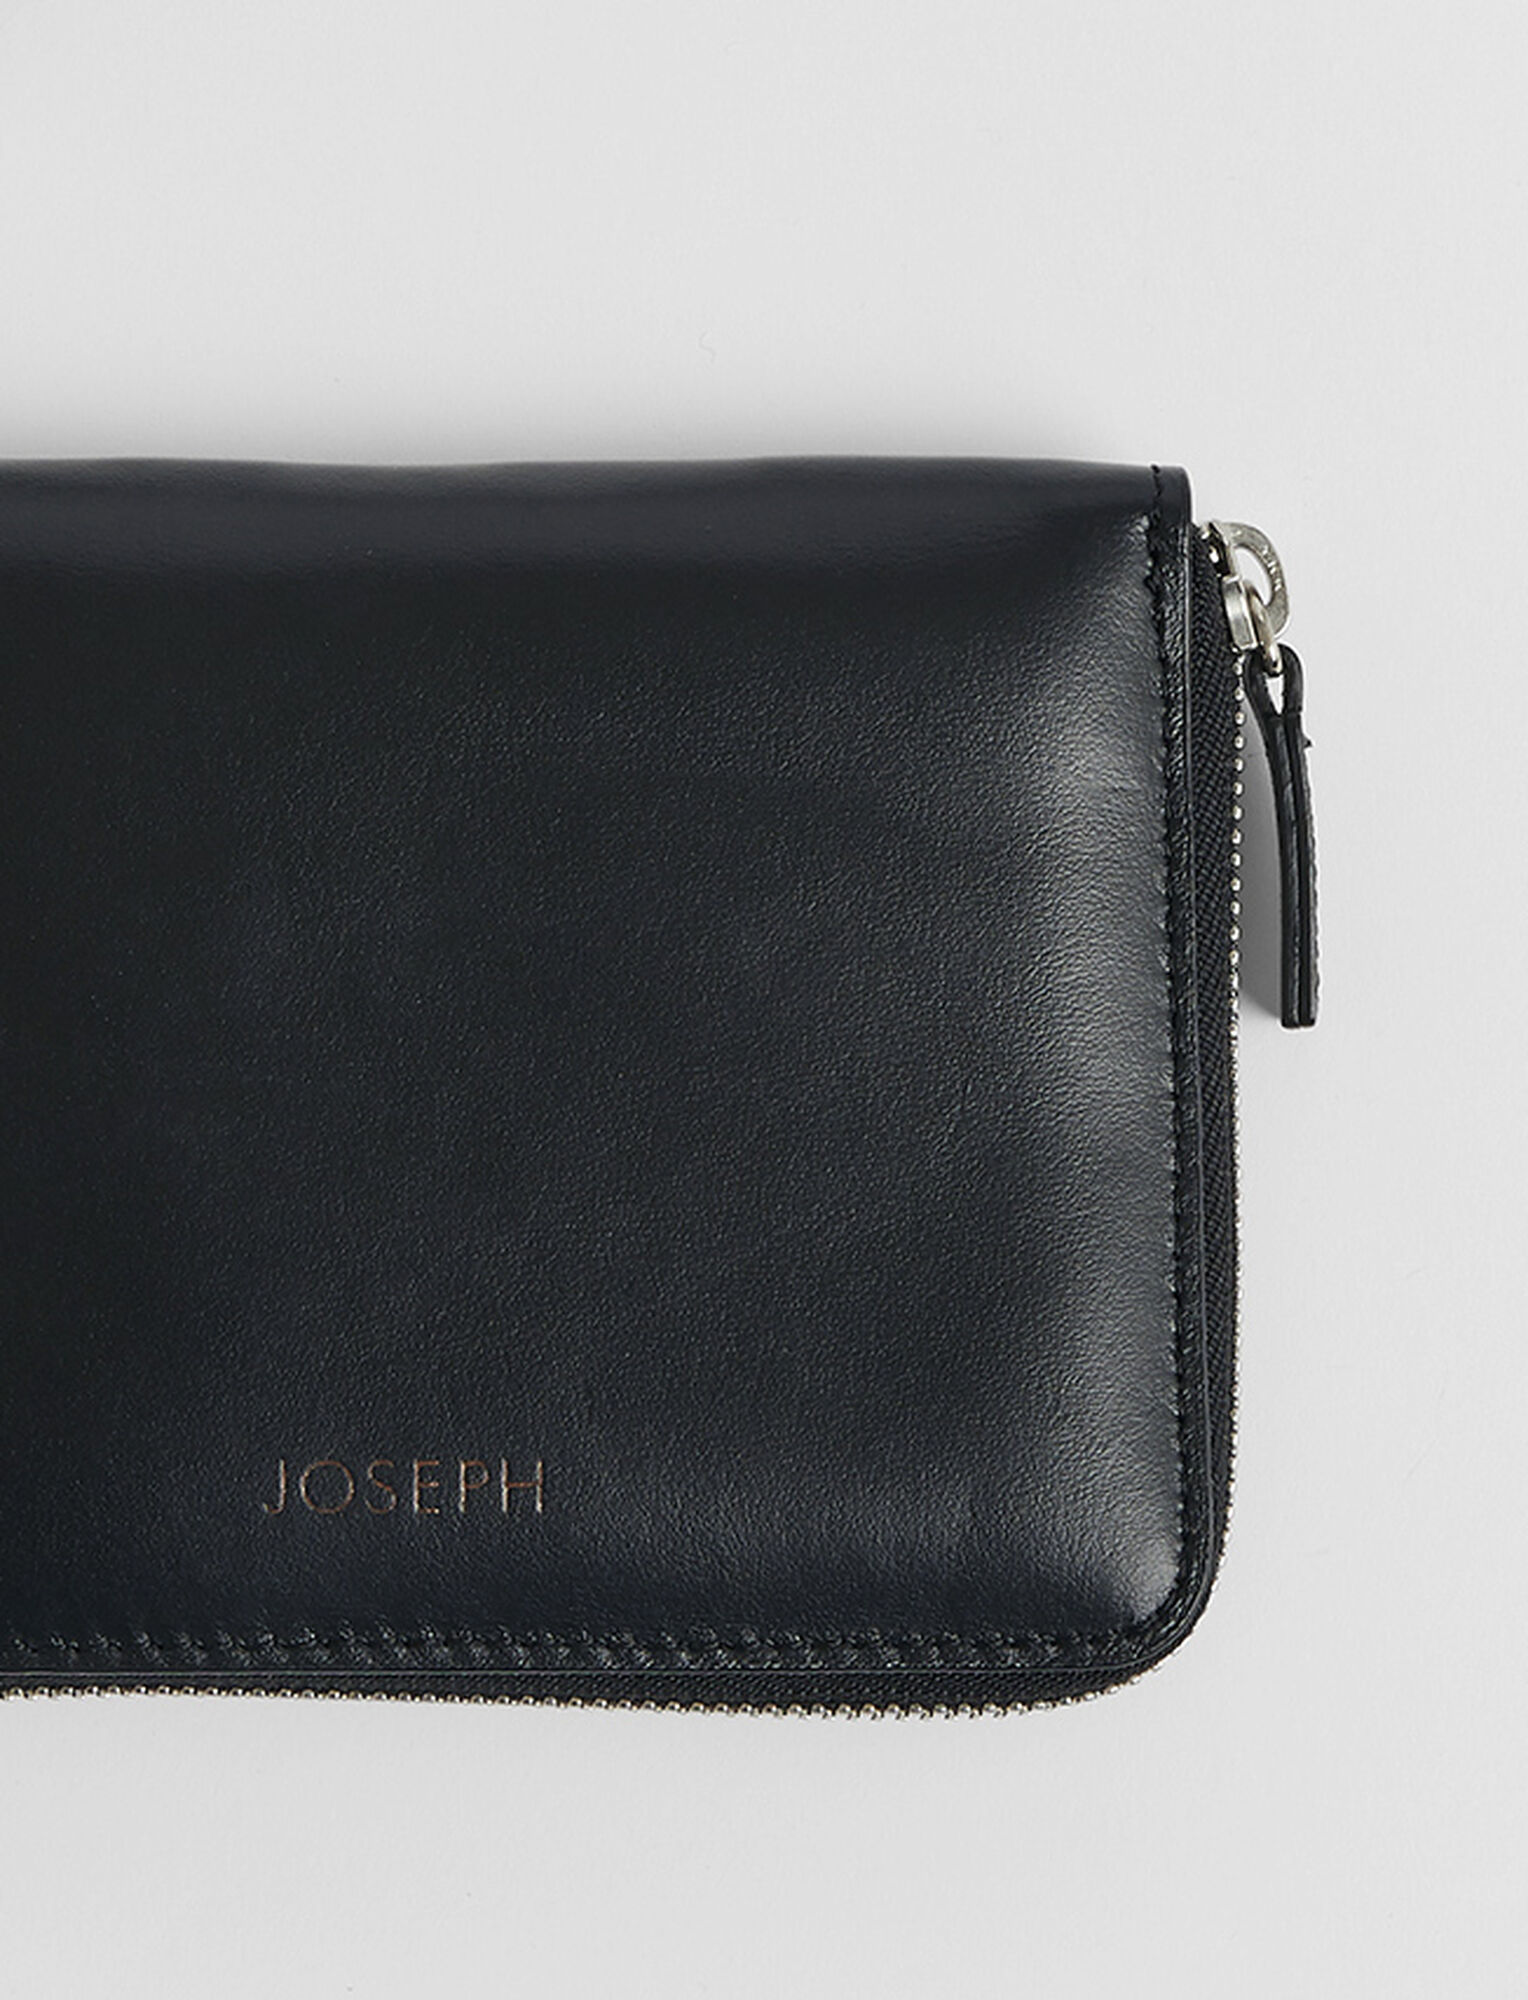 Joseph, Leather Strap Zip Wallet, in Black